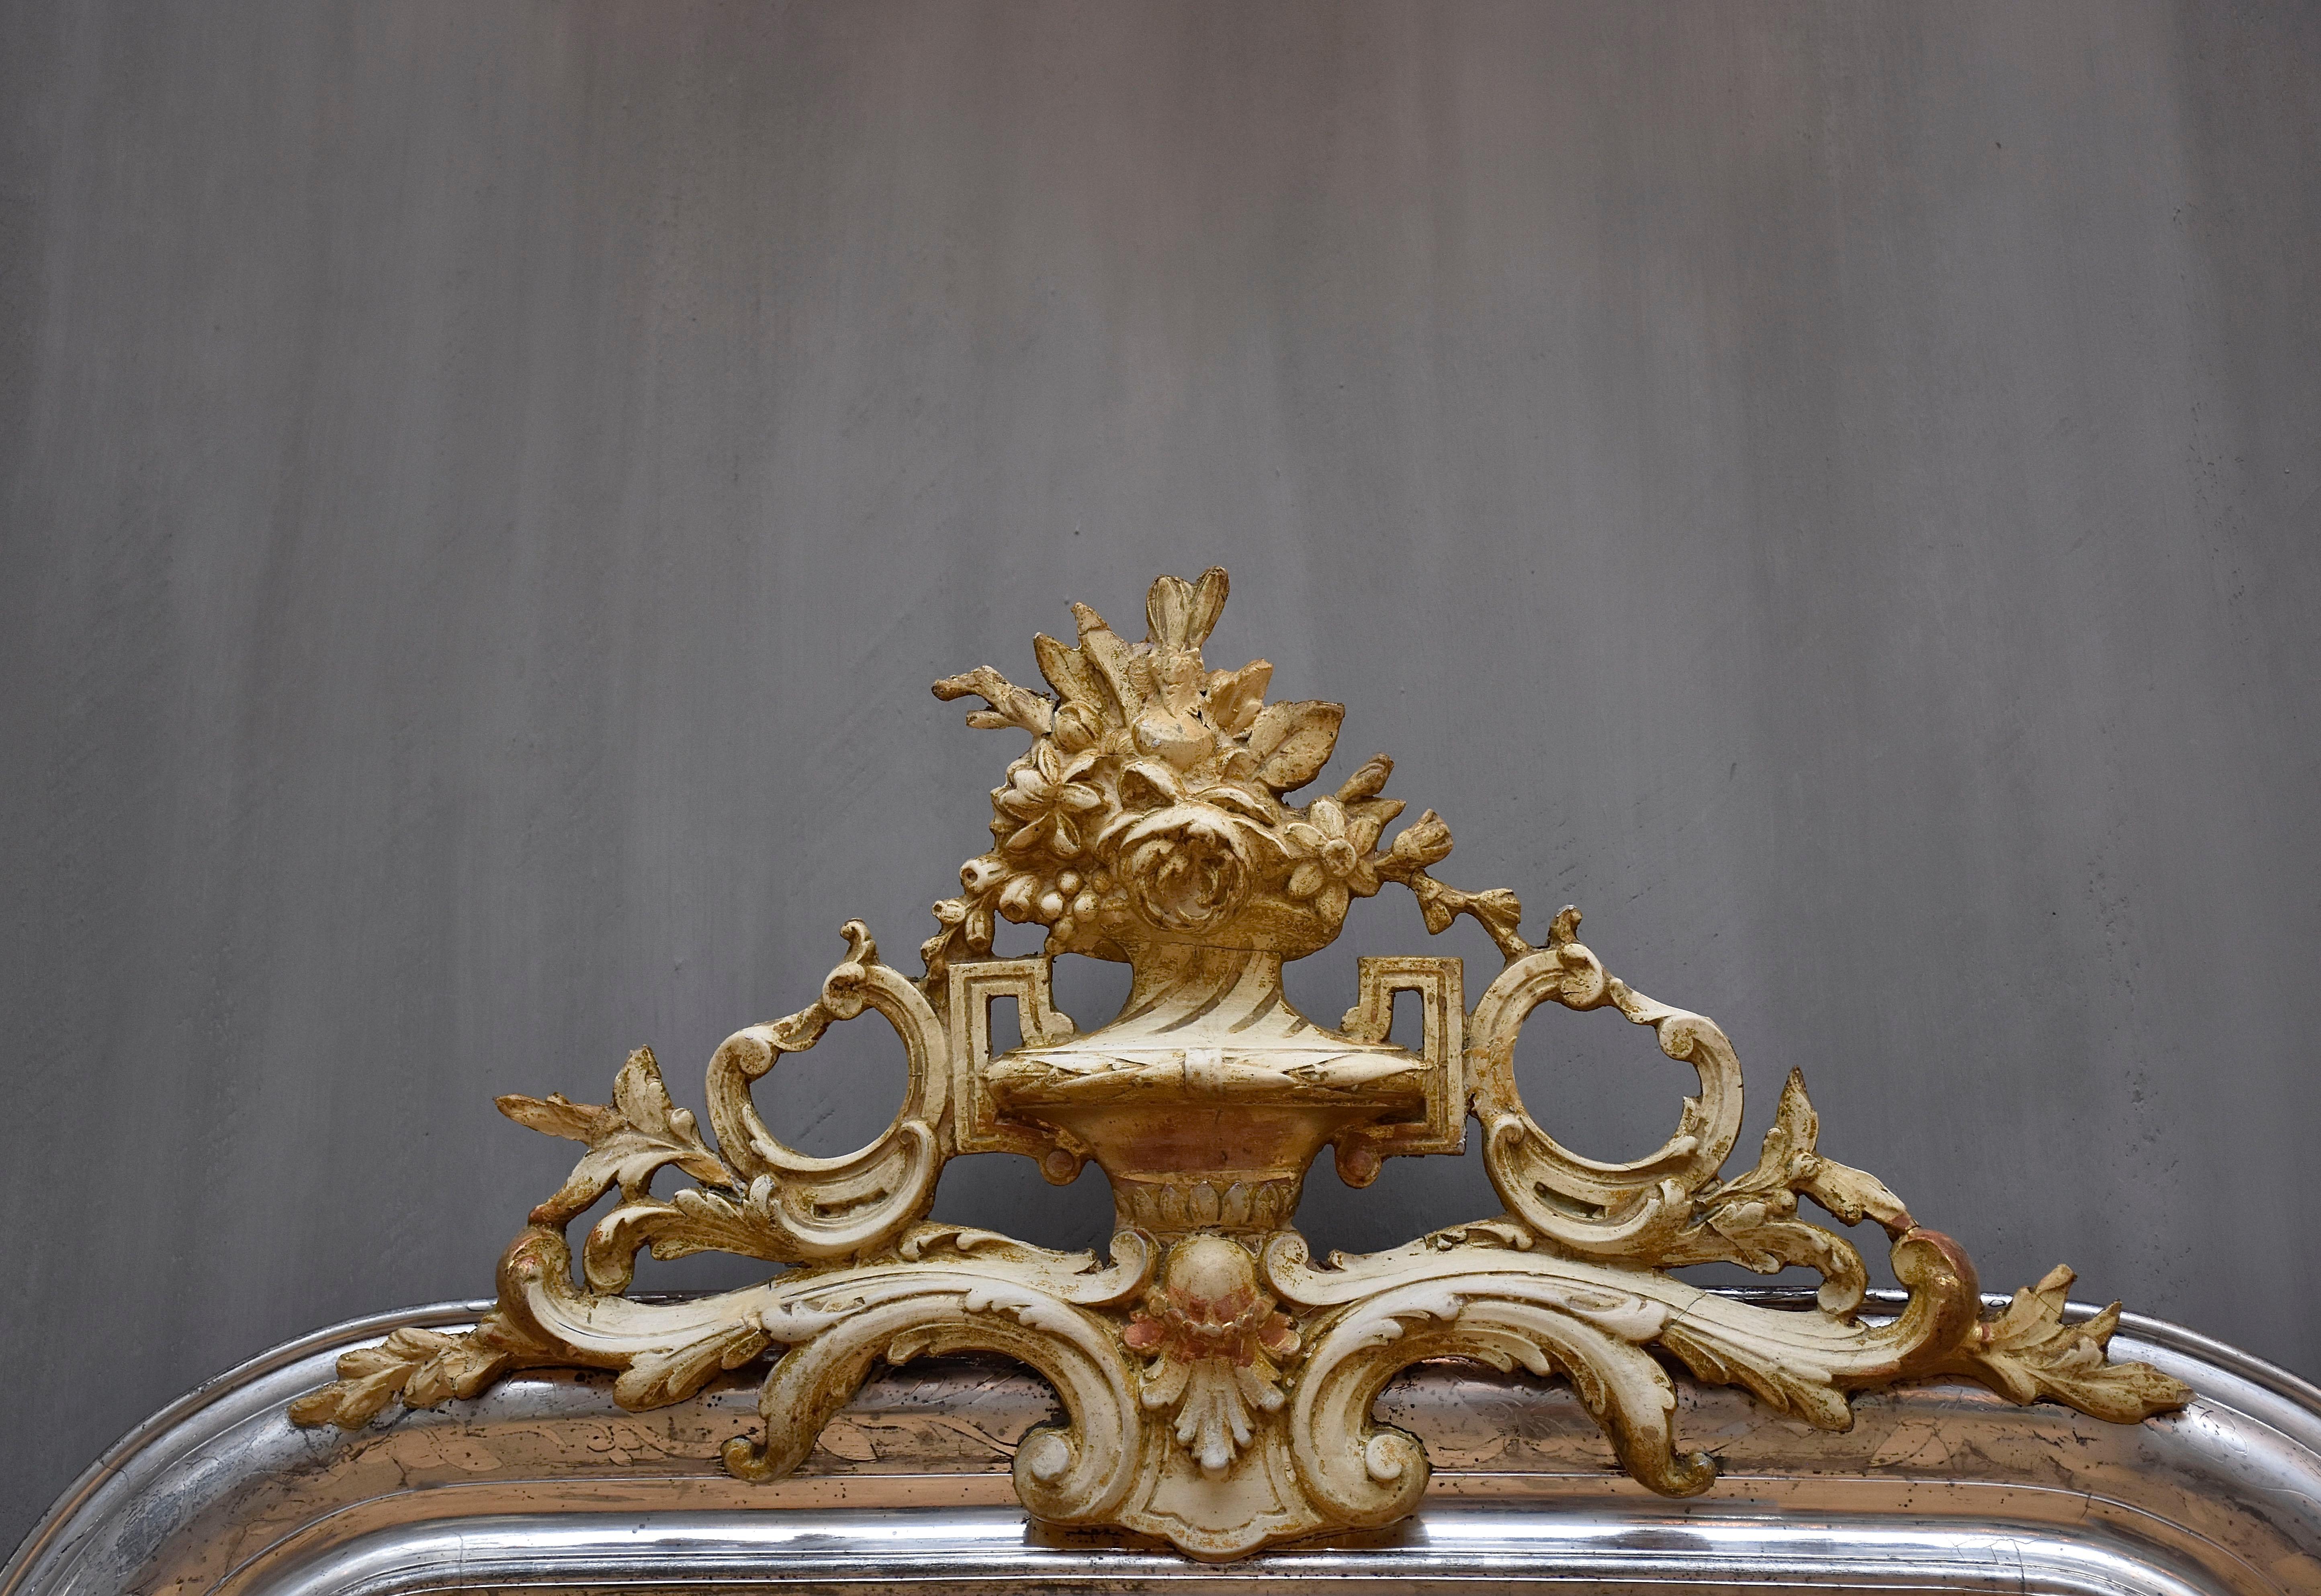 Ein hübscher antiker französischer Spiegel mit einem Wappen.
Das Wappen ist mit Blumen und Blättern verziert. 
Der Rahmen ist mit Blattsilber vergoldet und mit geätzten Blattmotiven versehen.
Das Glas ist antikes, silbernes Spiegelglas.
Herkunftsort